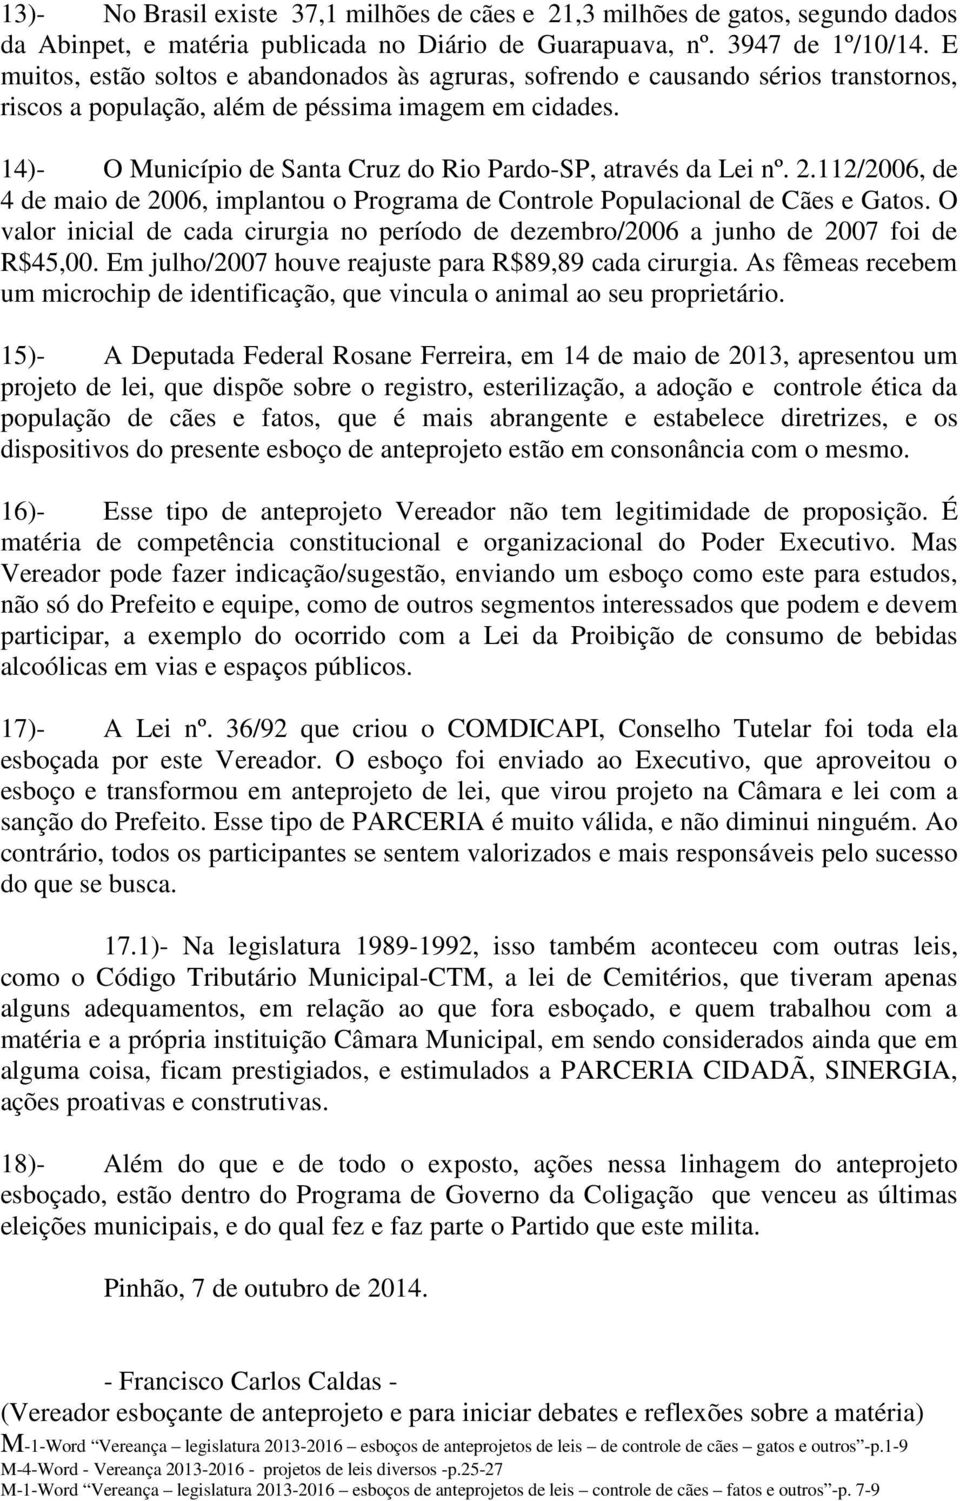 14)- O Município de Santa Cruz do Rio Pardo-SP, através da Lei nº. 2.112/2006, de 4 de maio de 2006, implantou o Programa de Controle Populacional de Cães e Gatos.